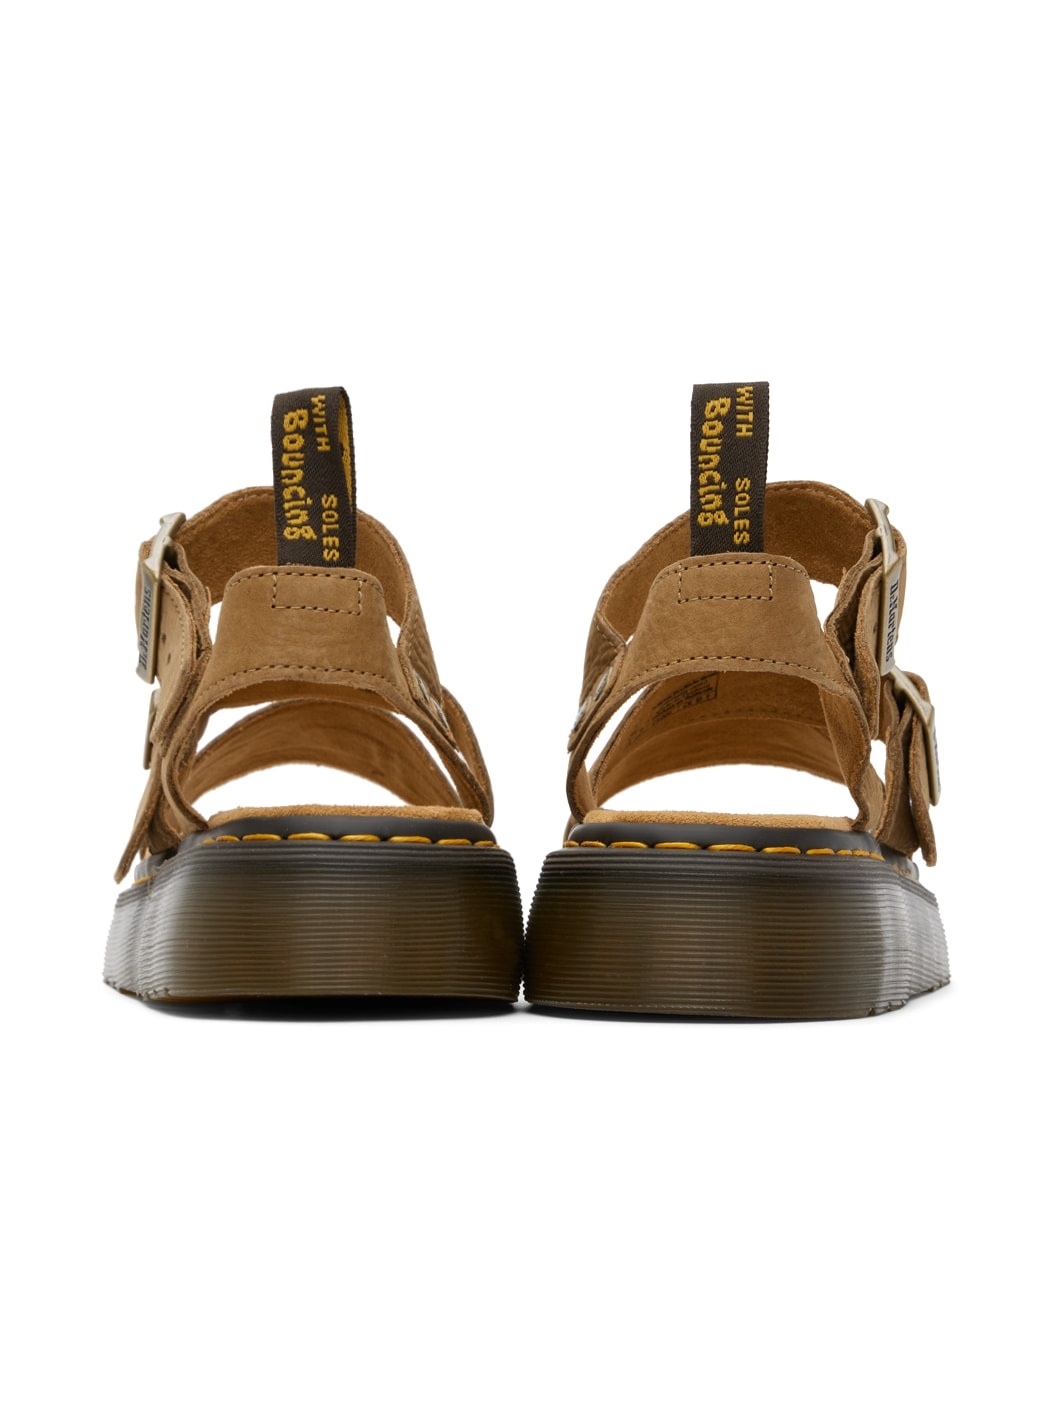 Tan Gryphon Quad Sandals - 2